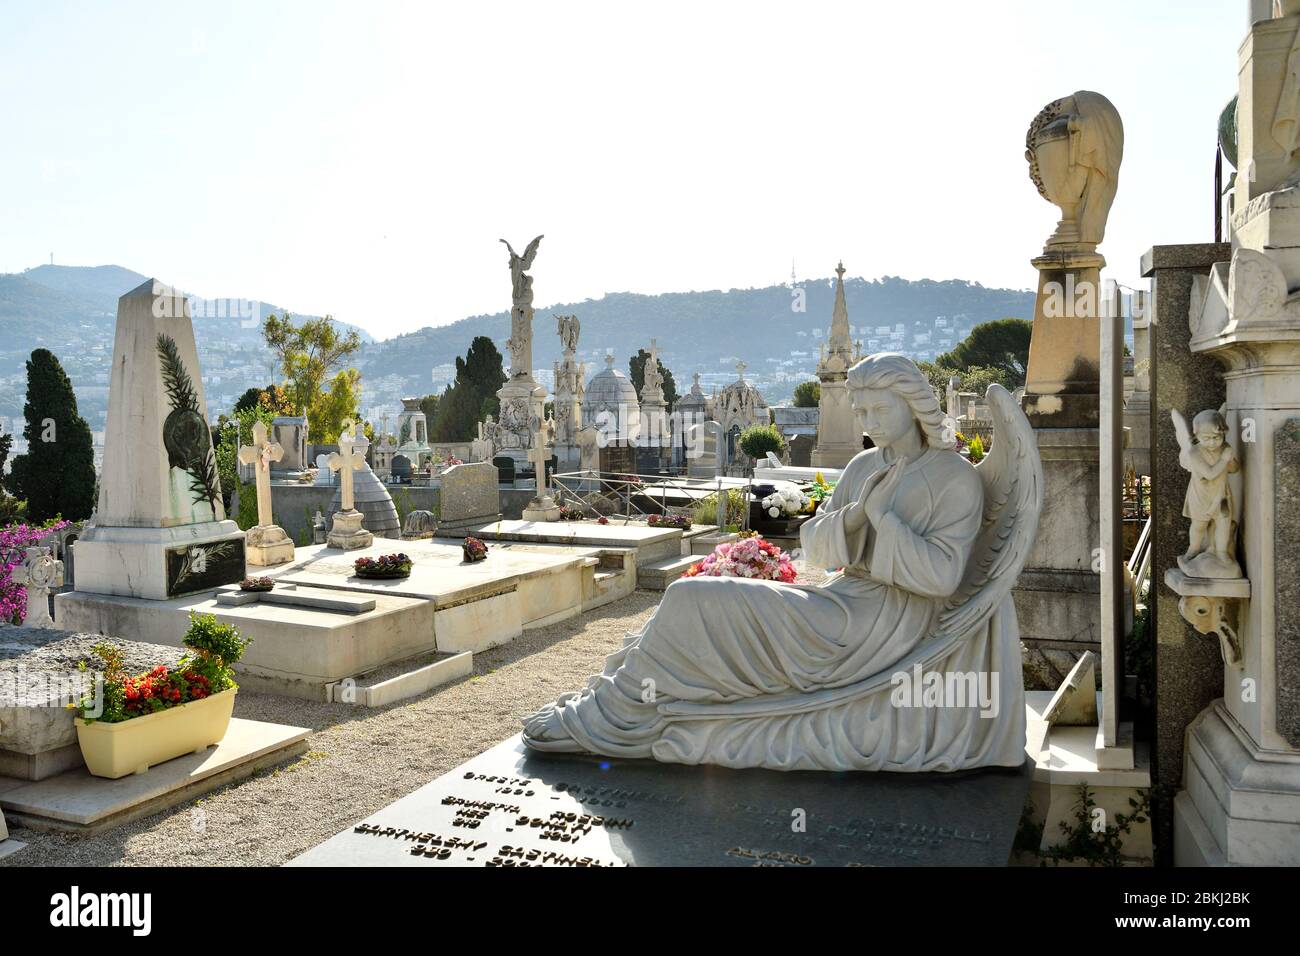 Frankreich, Alpes-Maritimes, Nizza, der monumentale Burgfriedhof wurde Ende des 18. Jahrhunderts auf dem Burghügel angesiedelt Stockfoto